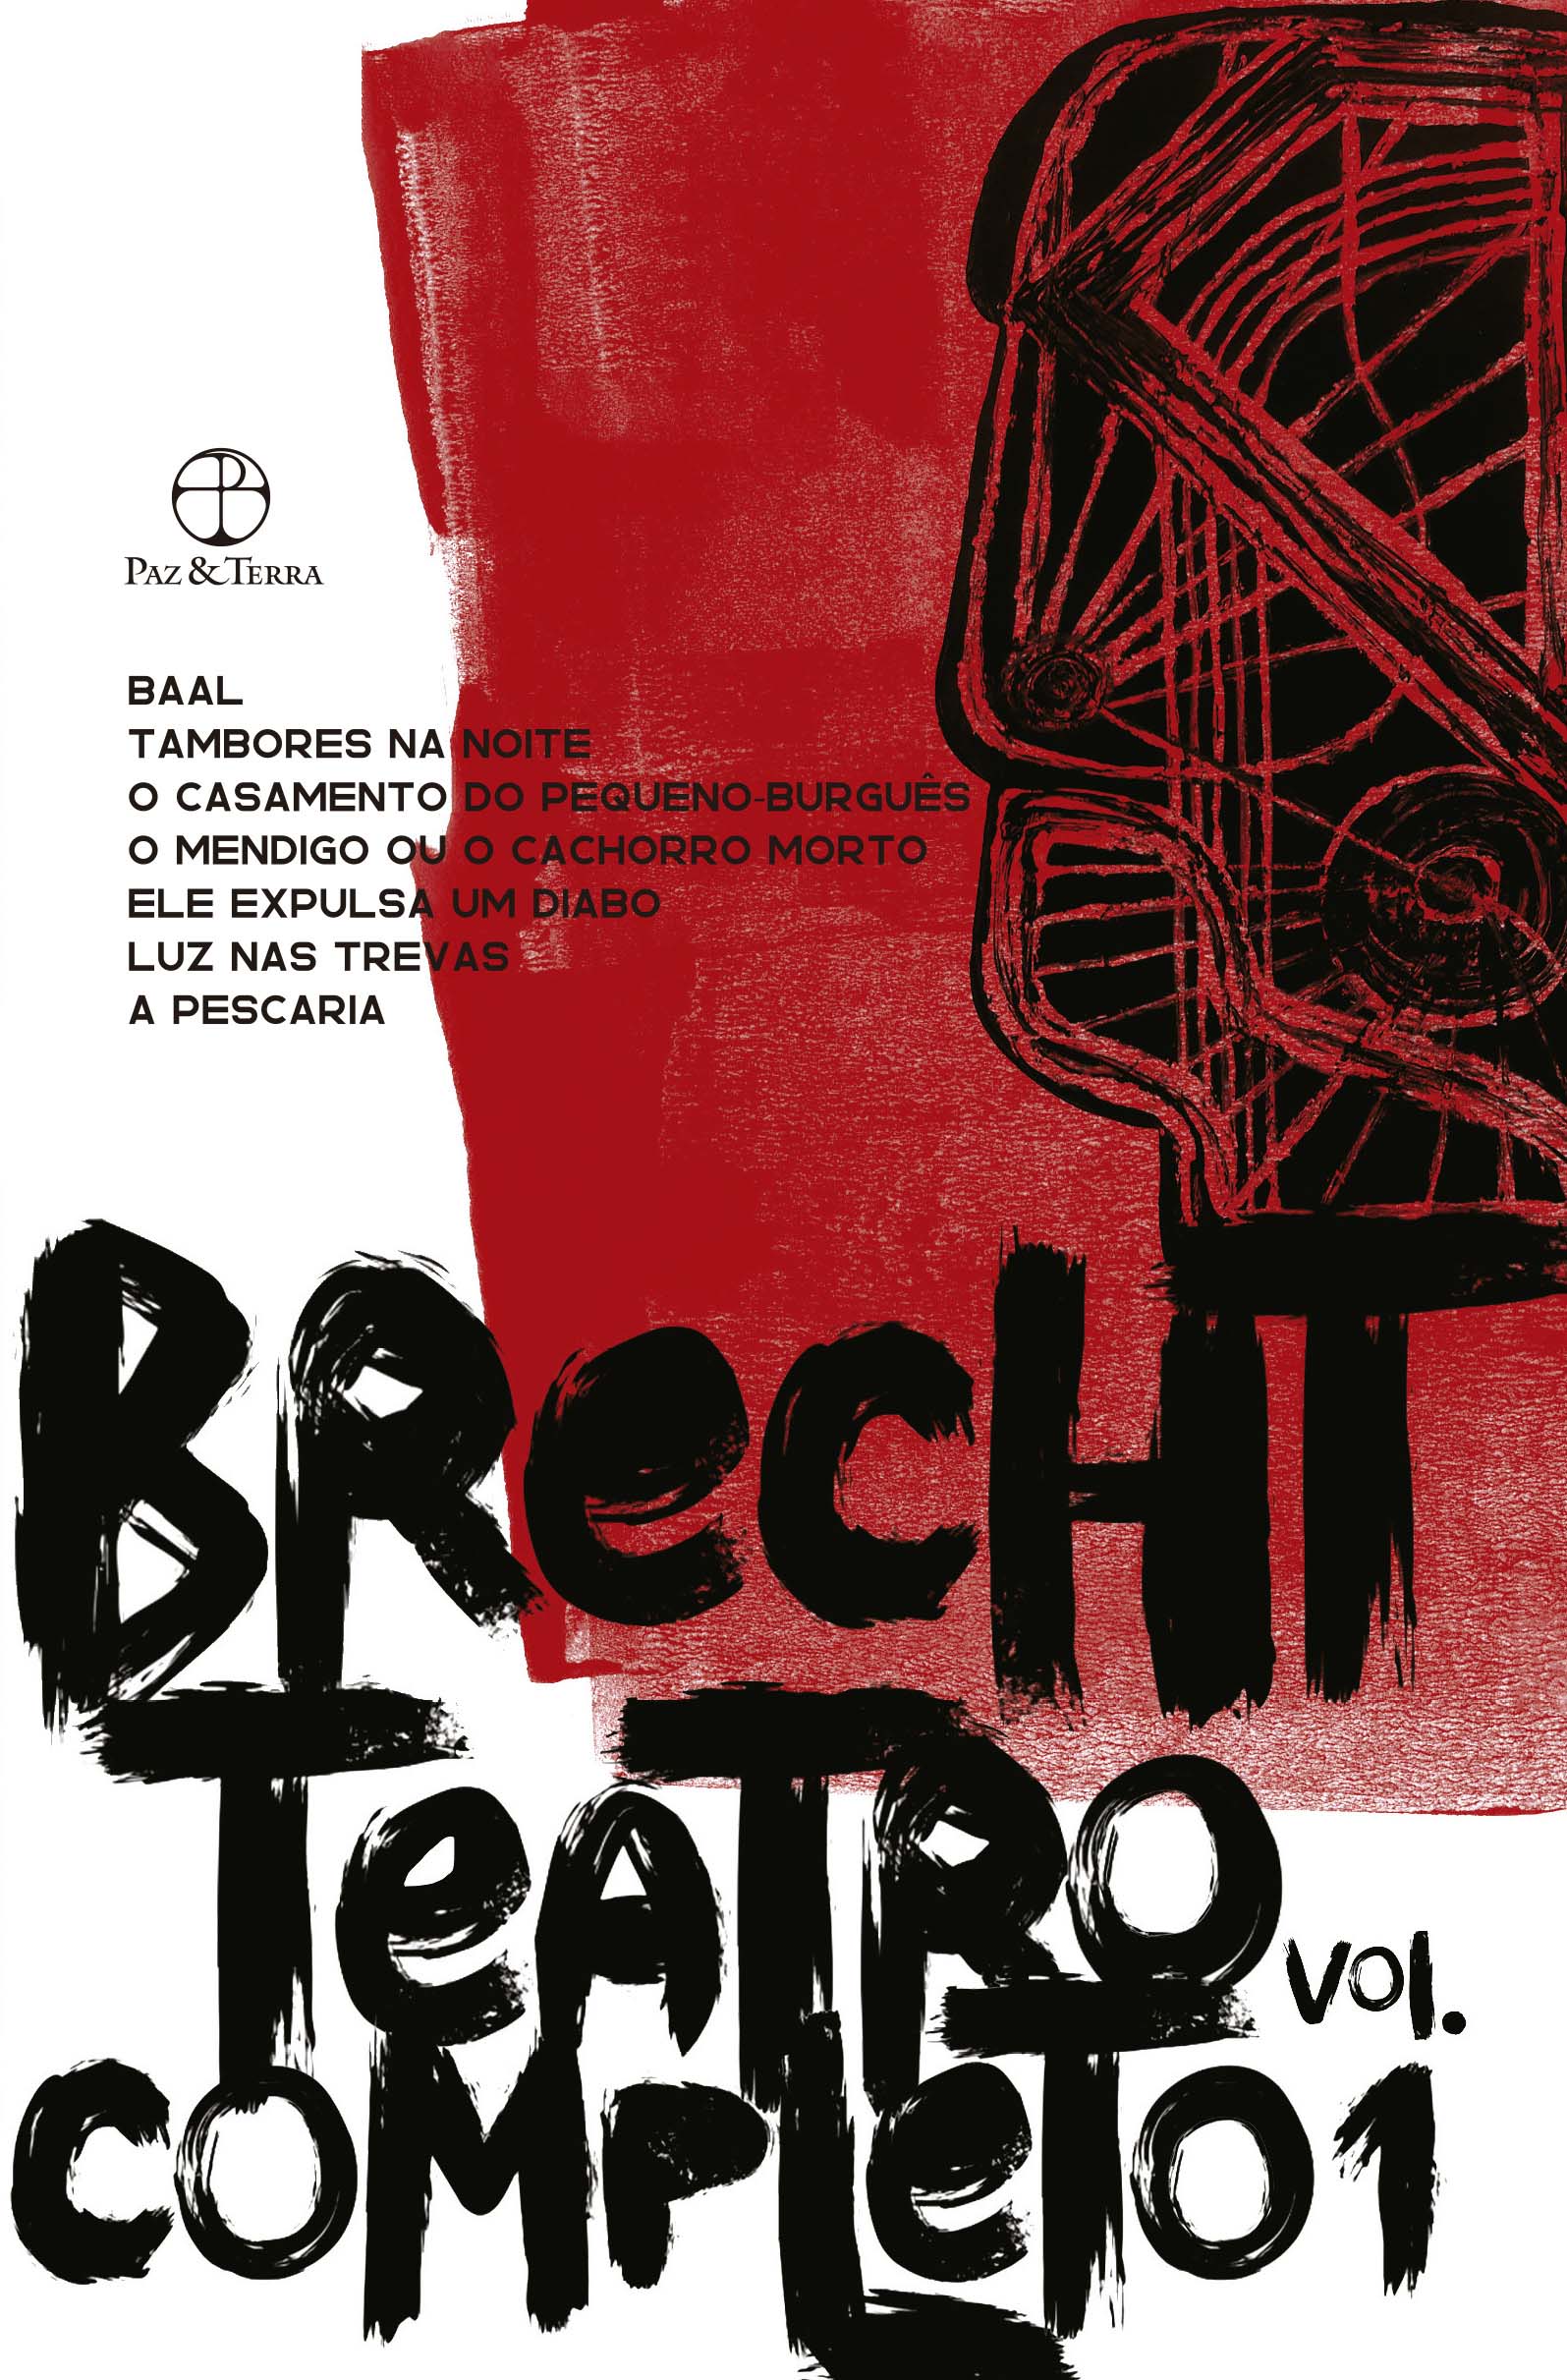 Teatro Completo - Vol. 01